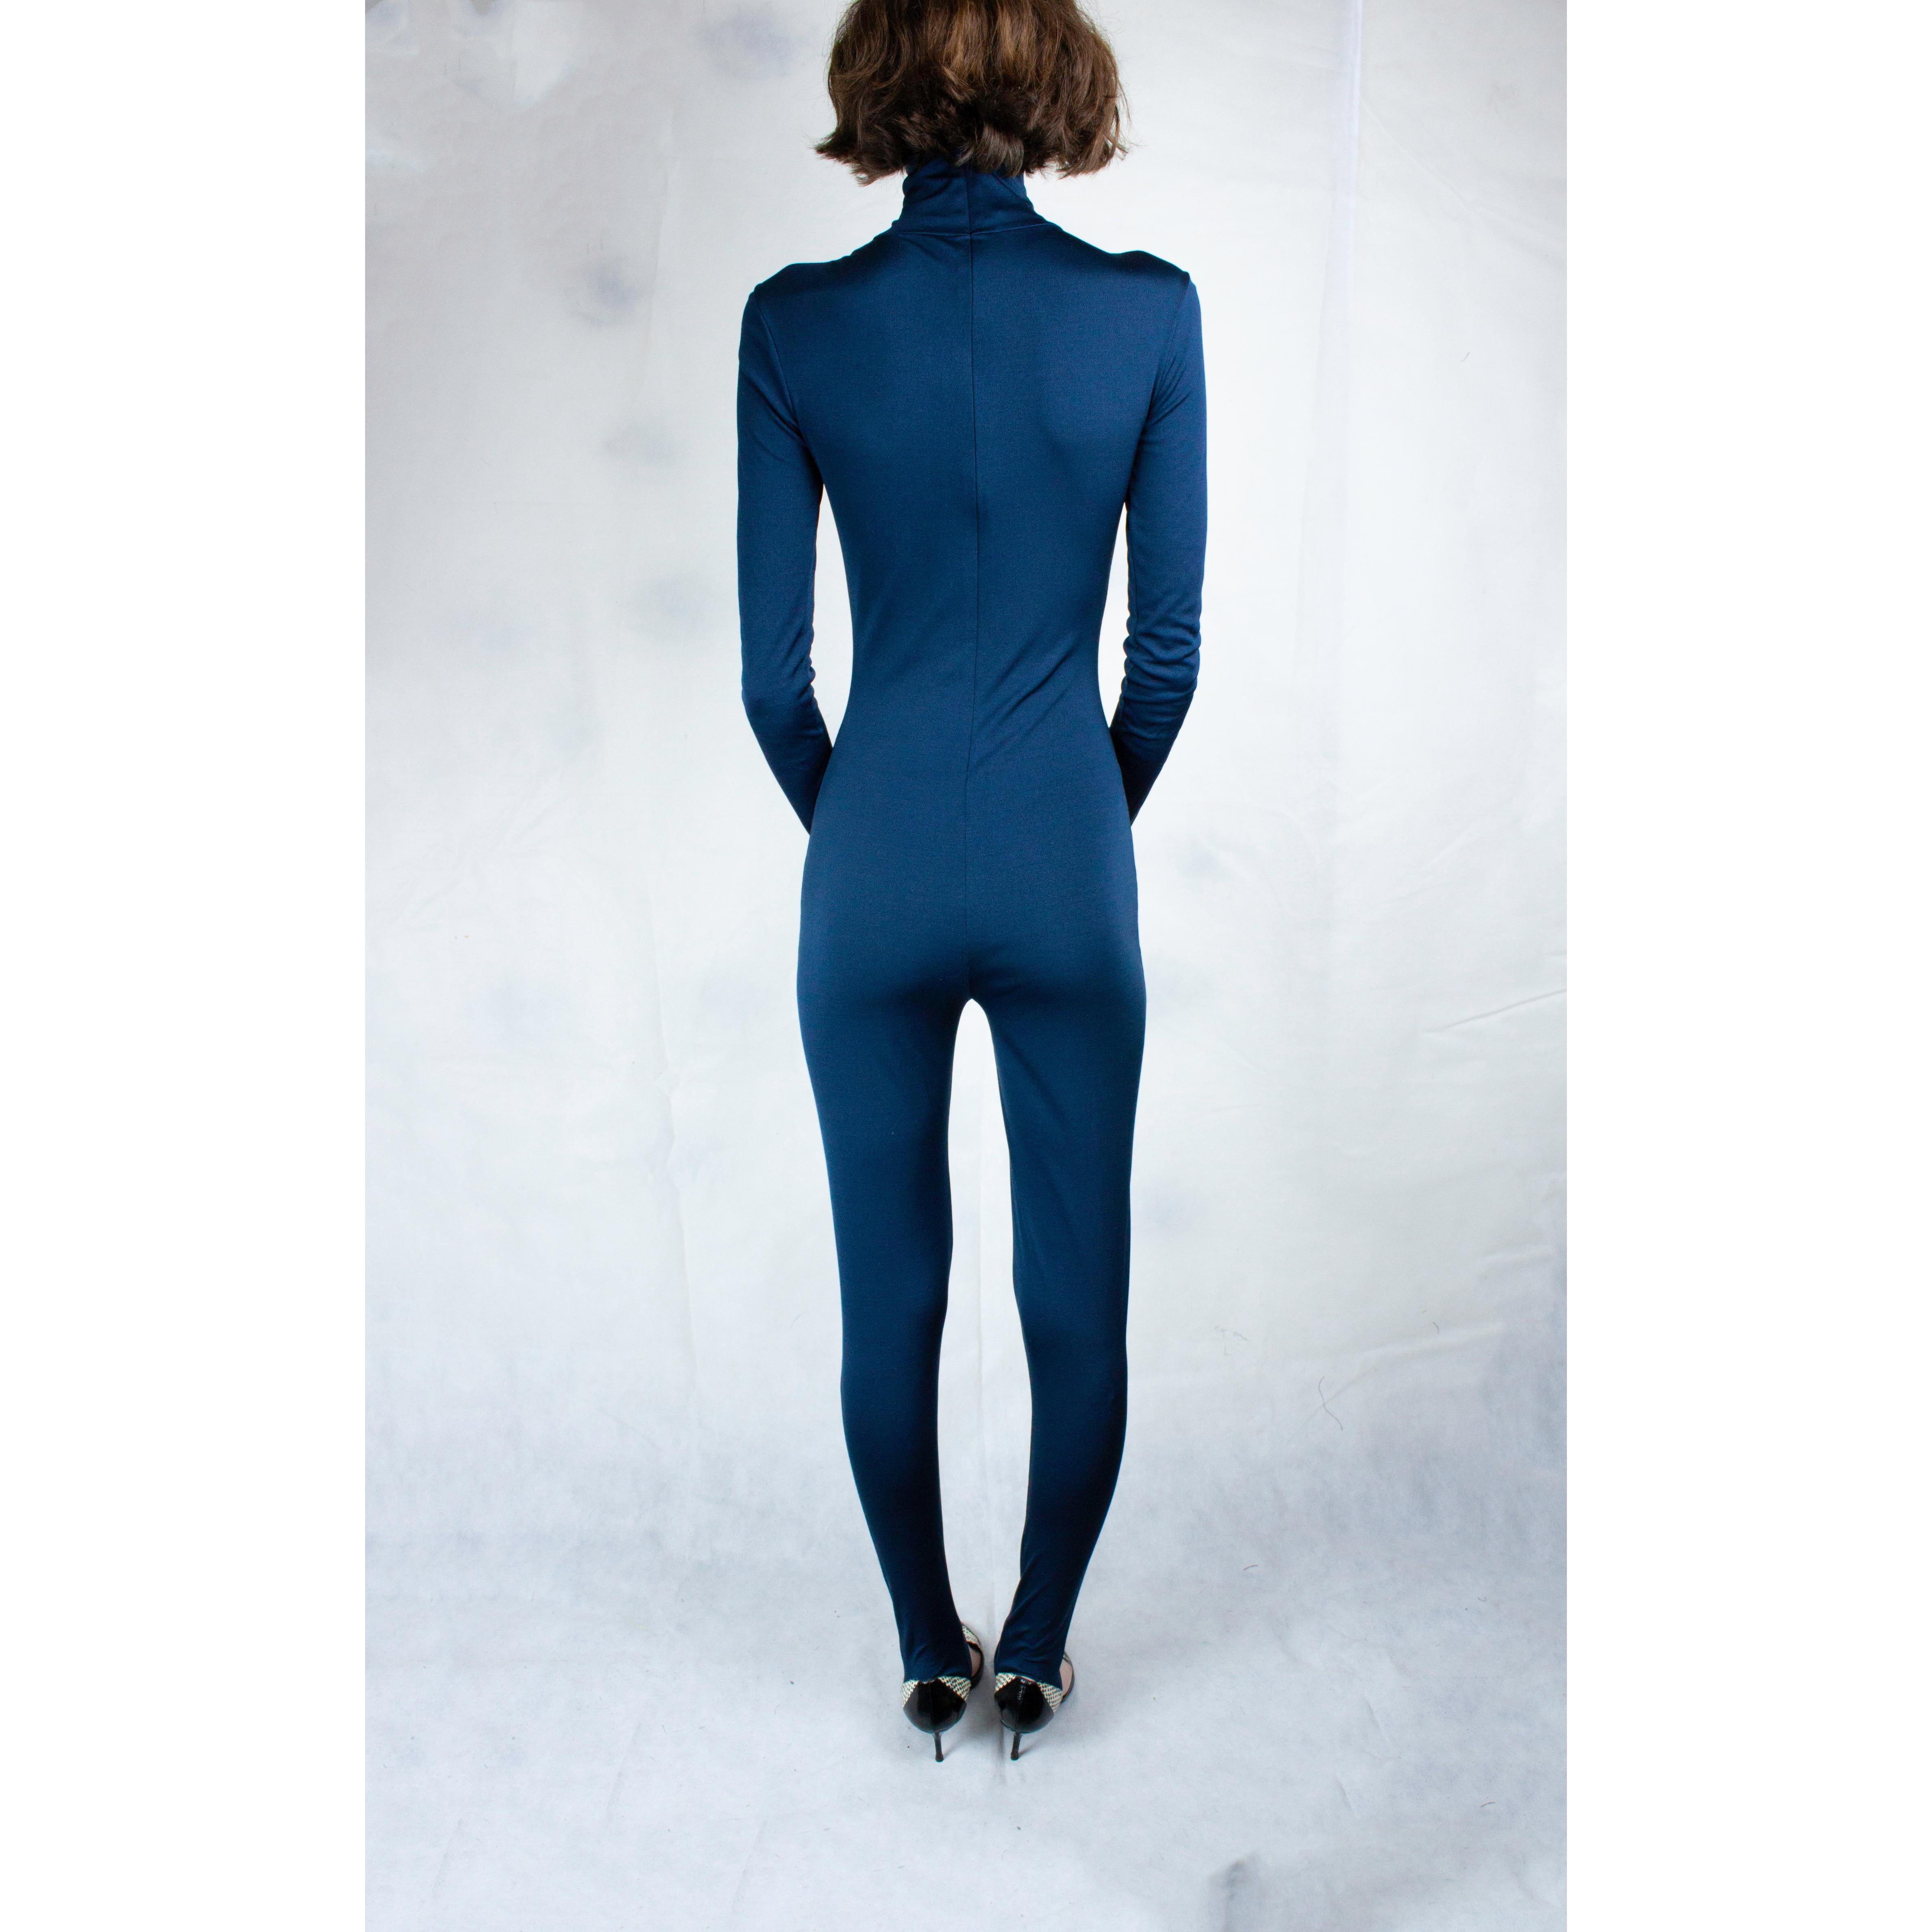 Women's Helmut Lang body-conscious high collar silk jersey jumpsuit.circa 1990s